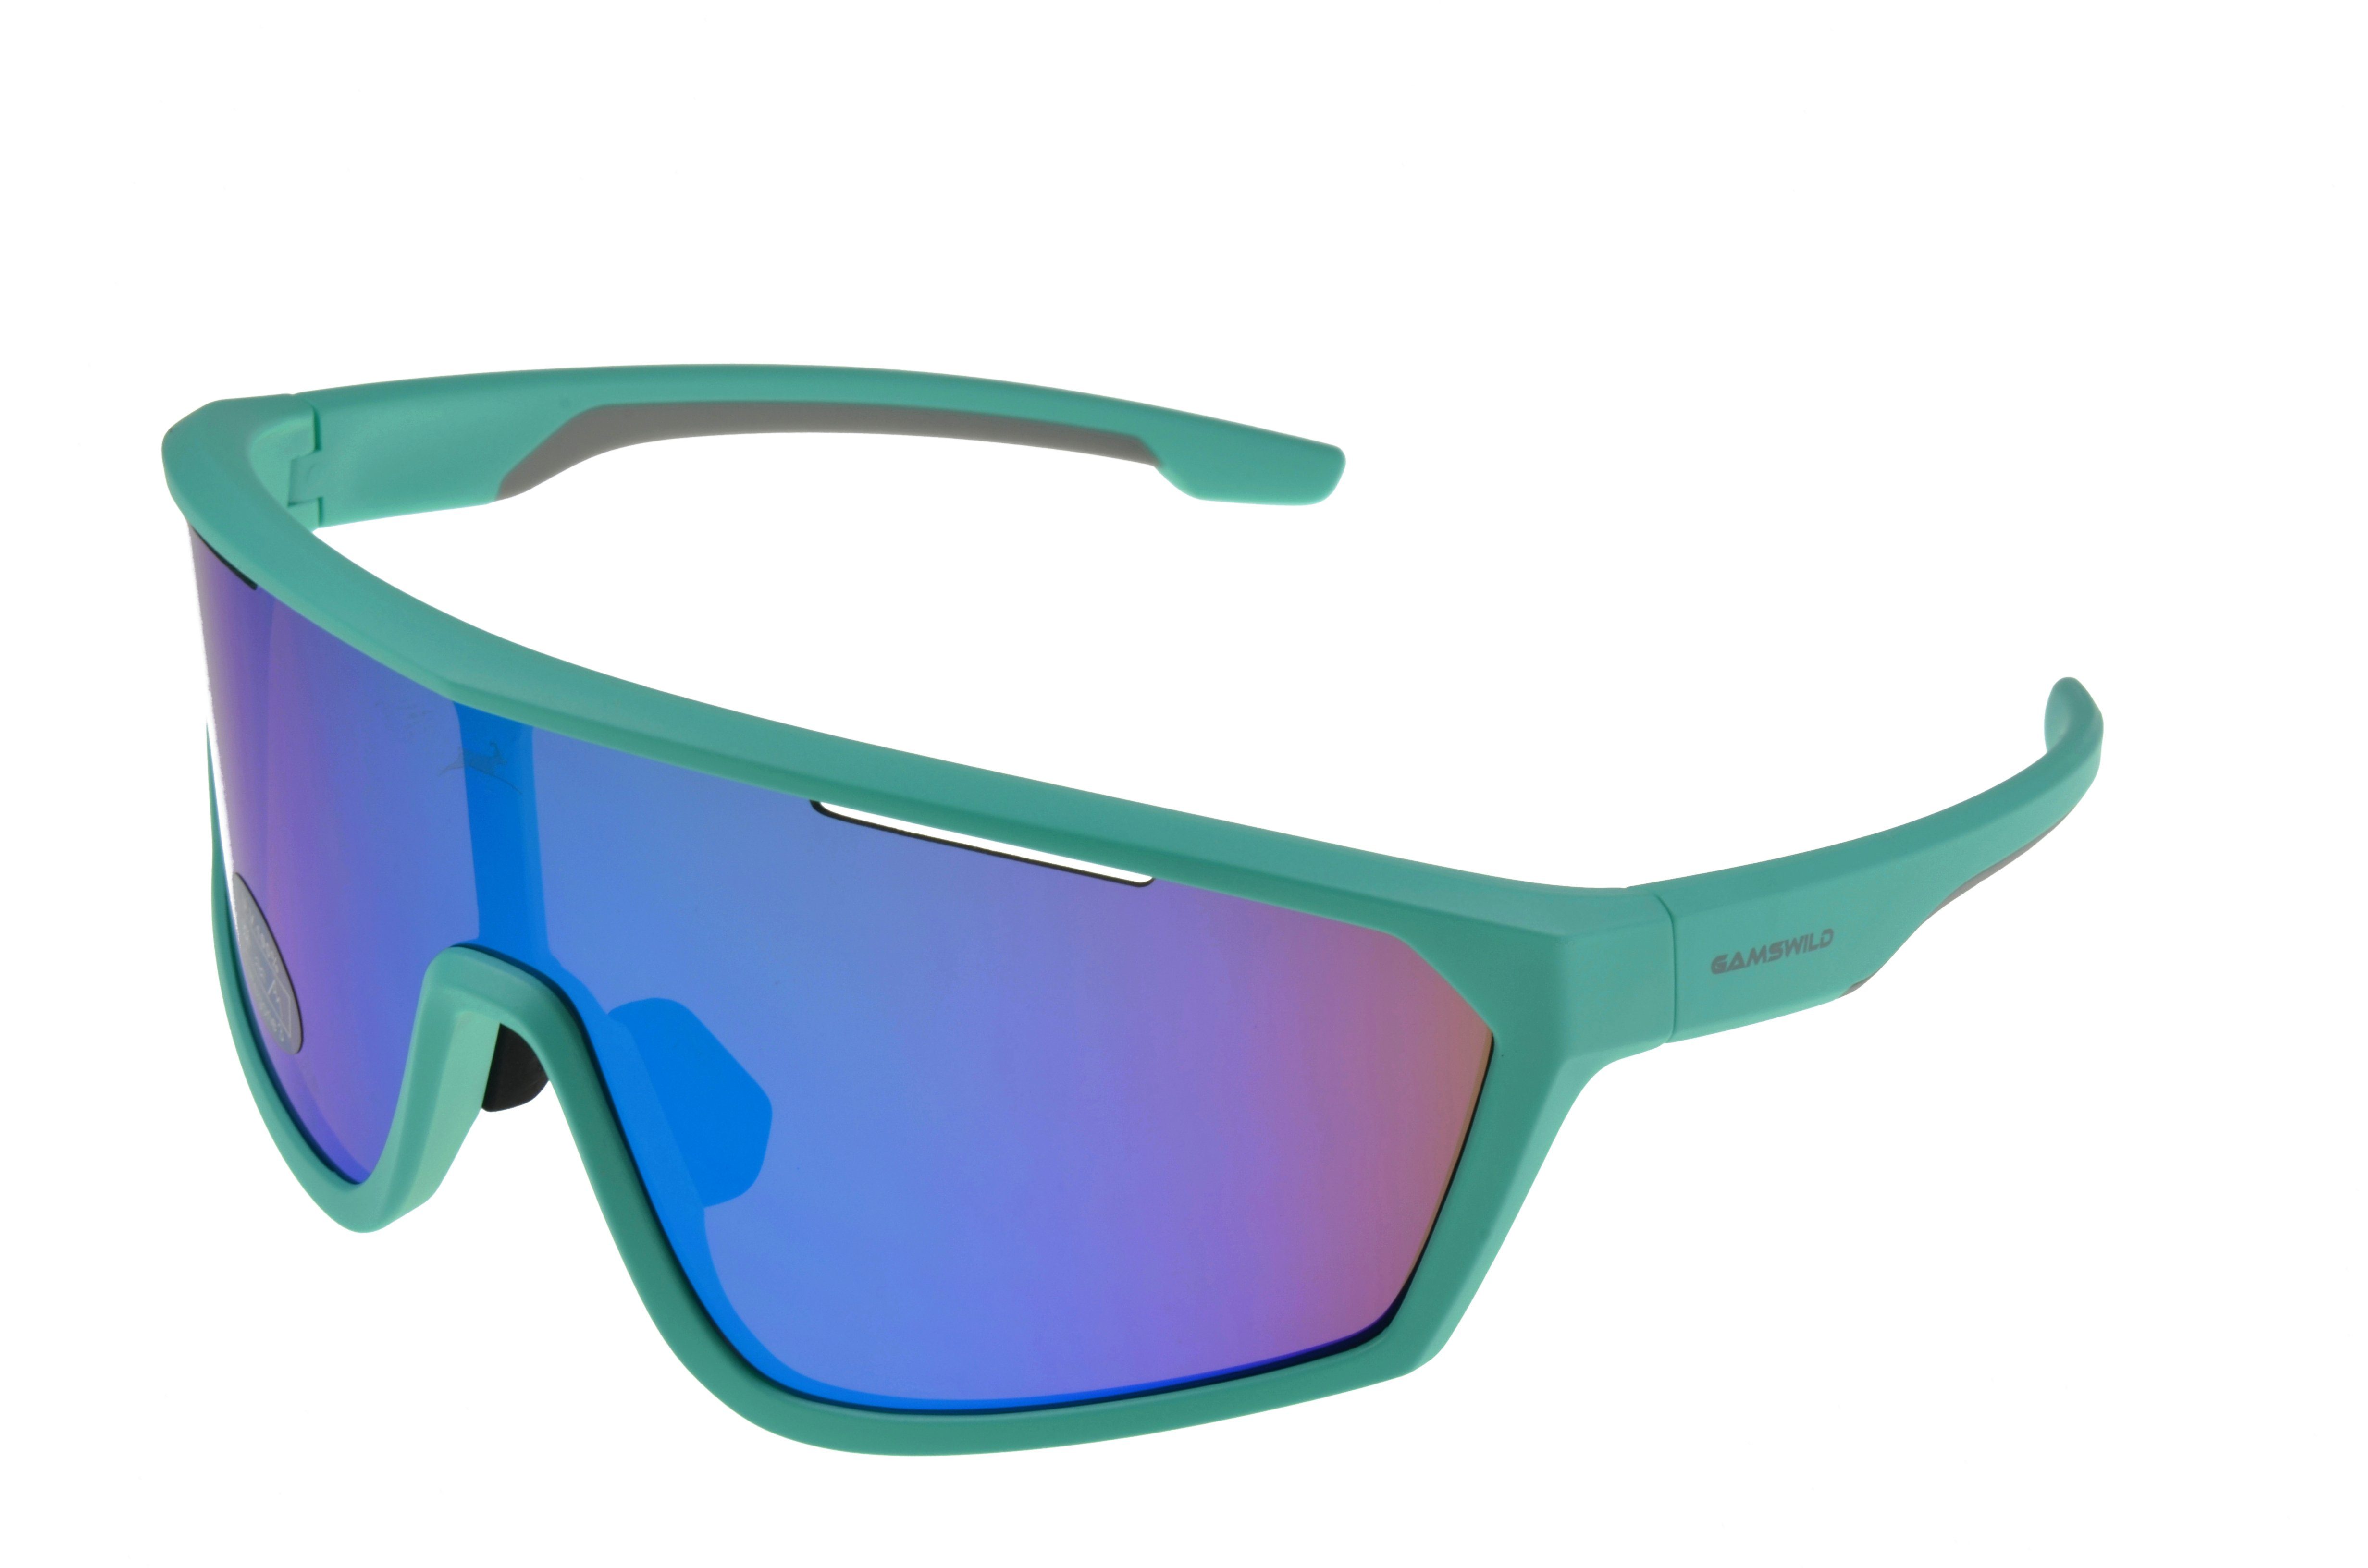 Gamswild Monoscheibensonnenbrille WS5838 Sonnenbrille Skibrille Fahrradbrille Damen Herren Unisex TR90 tolles Design, grün, blau, weiß mintgrün